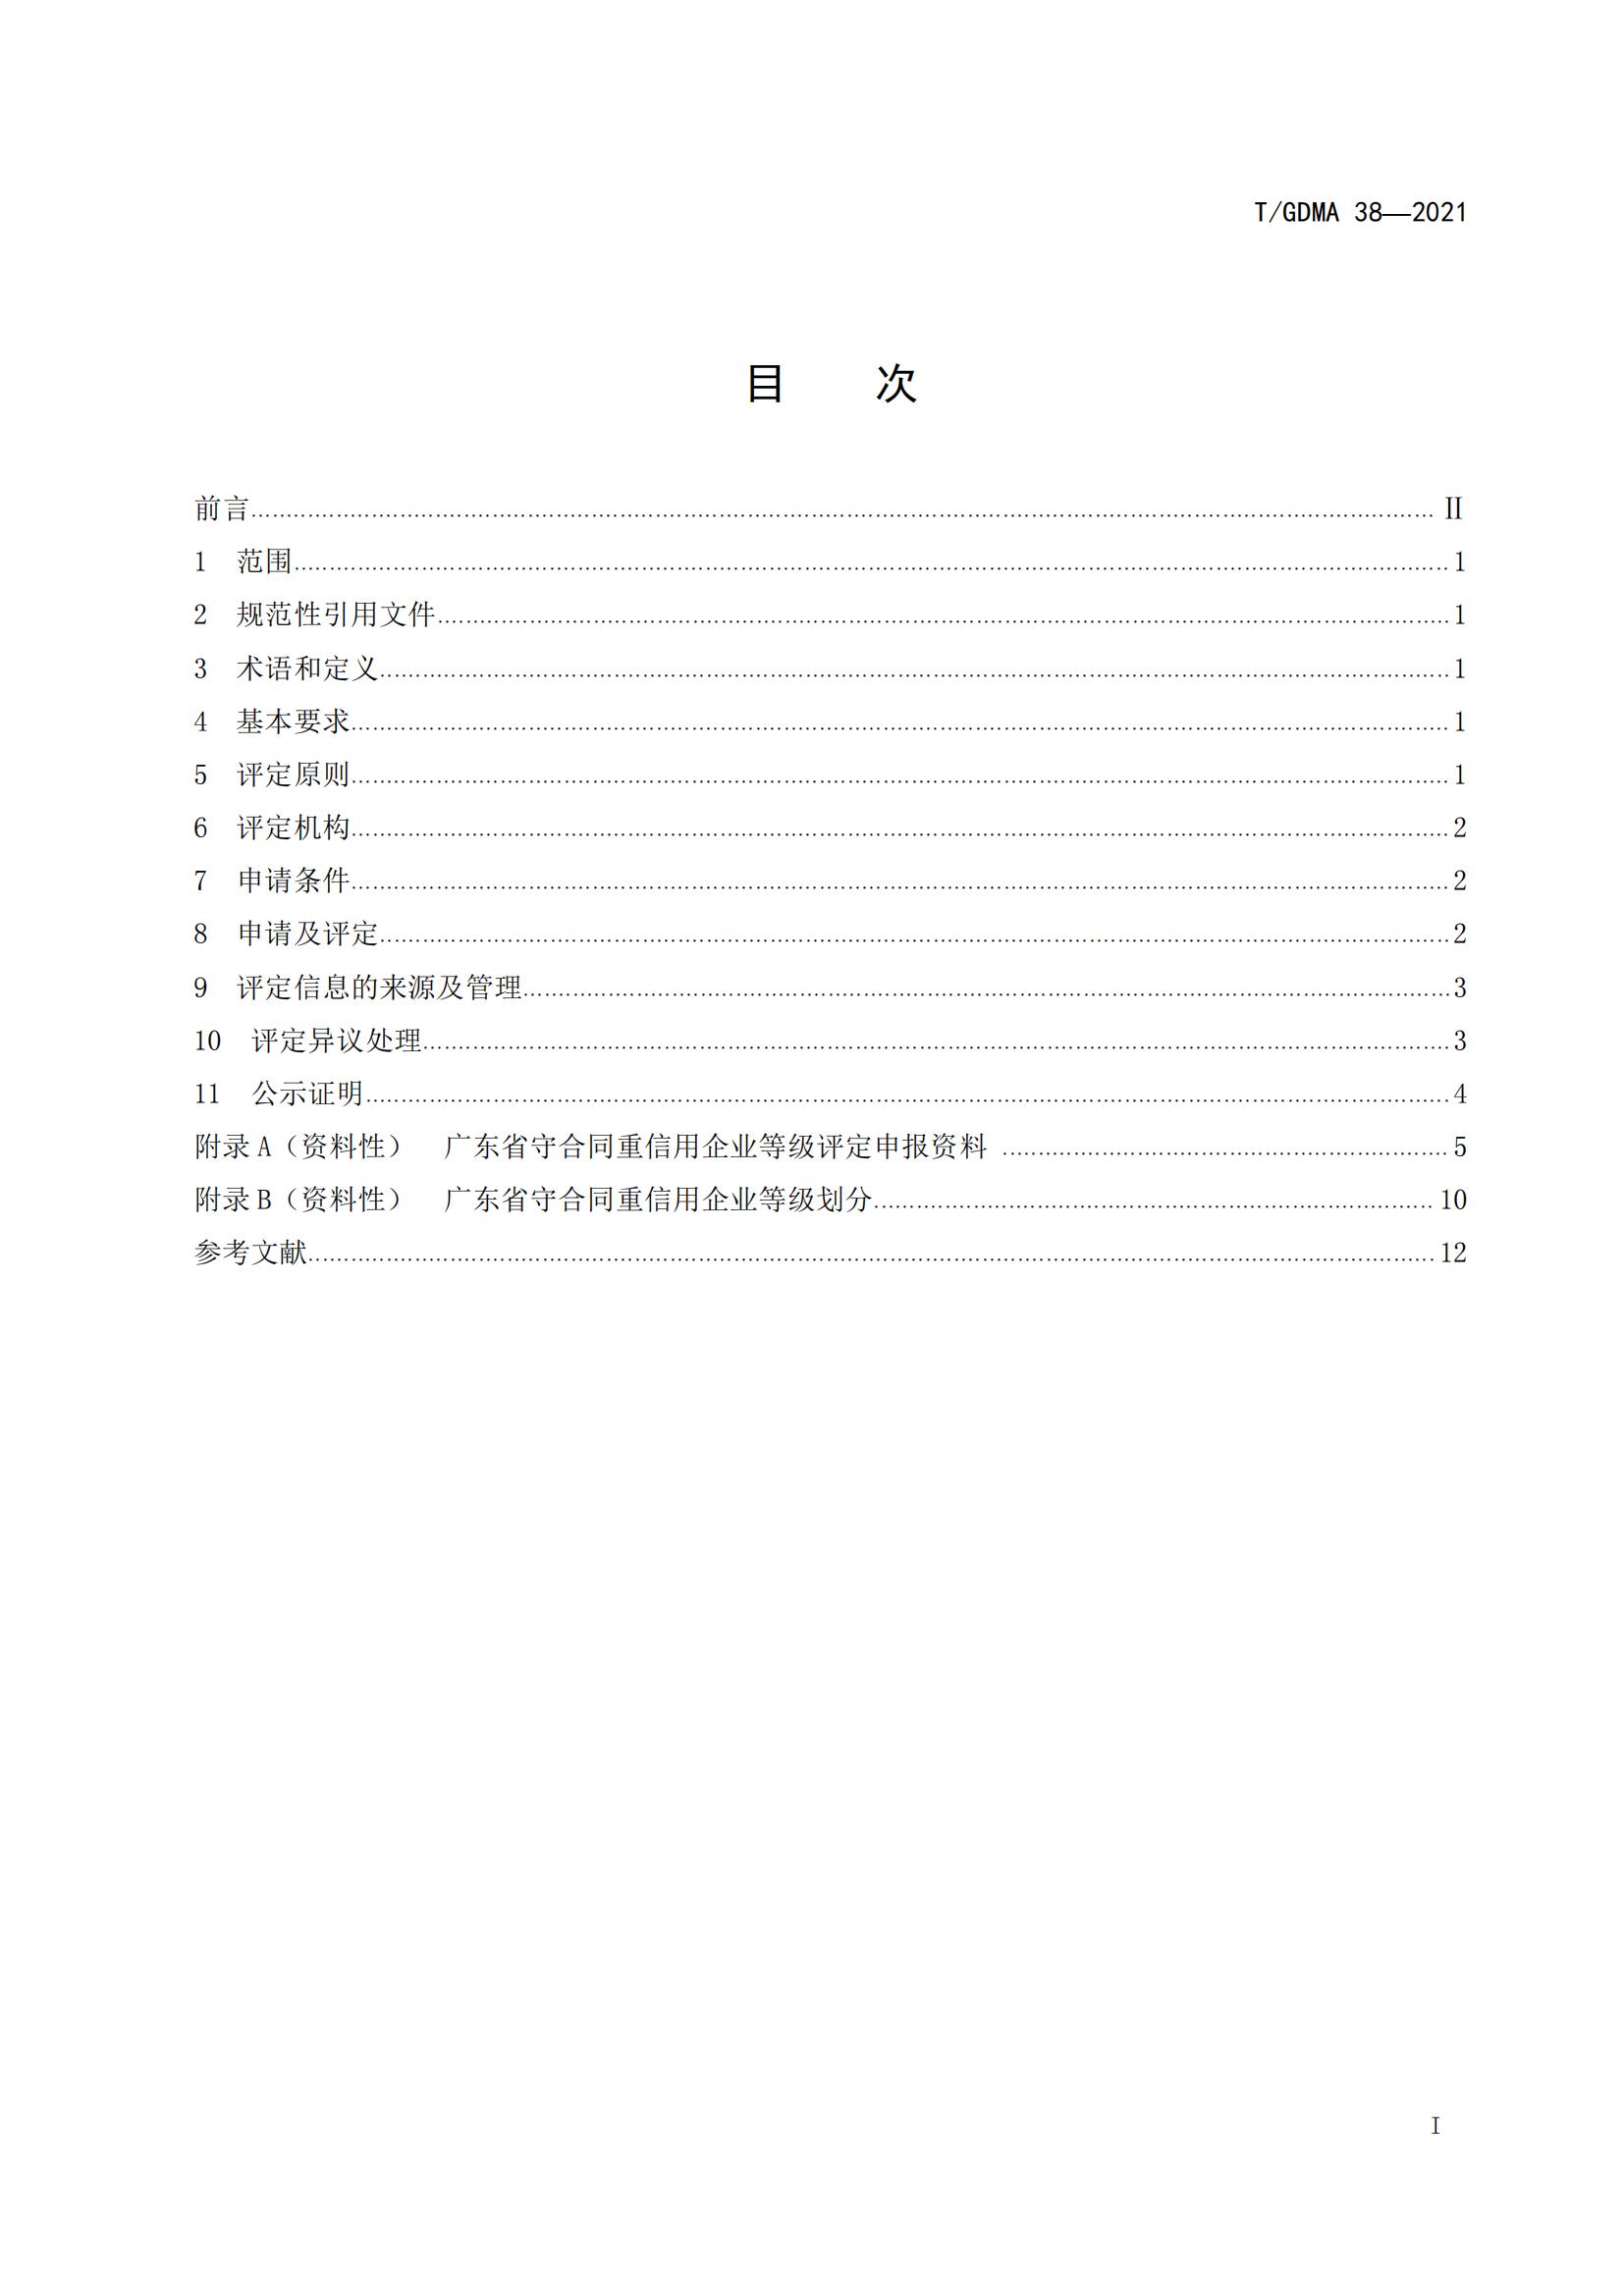 TGDMA 38 广东省守合同重信用企业等级评定规范-发布稿_02.jpg